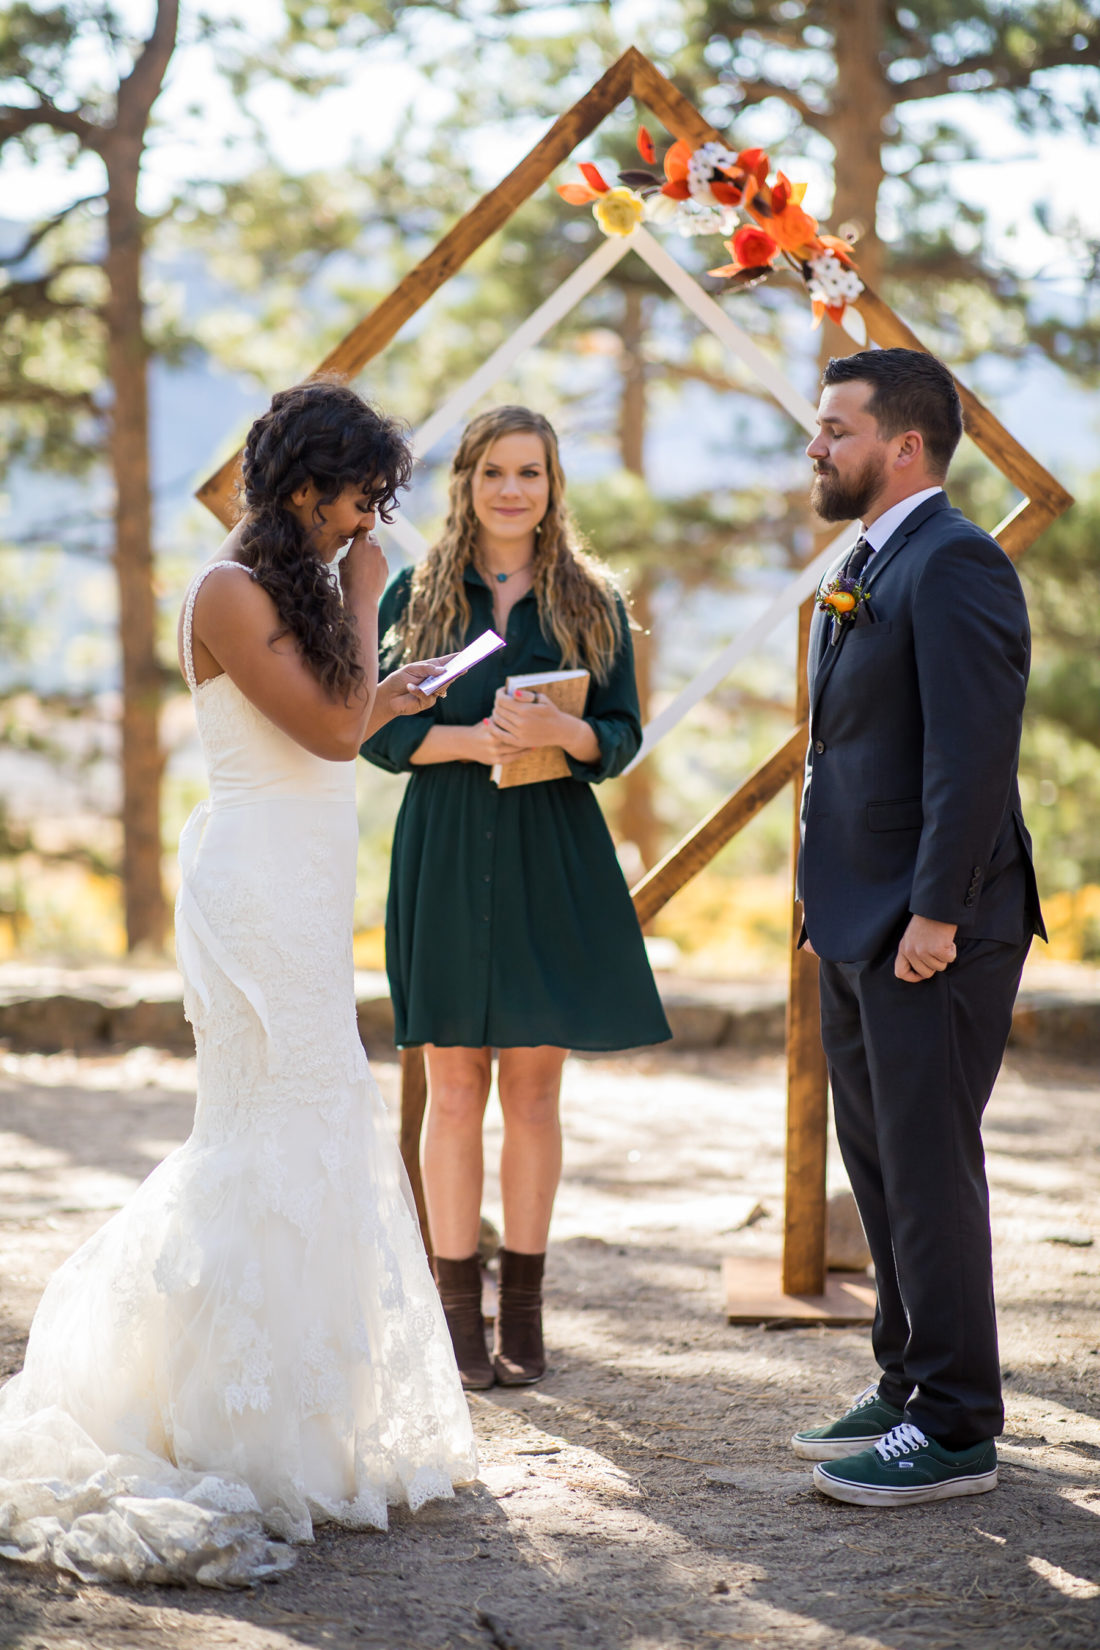 Fall Colored Mountain Wedding in Colorado - Mountainside Bride